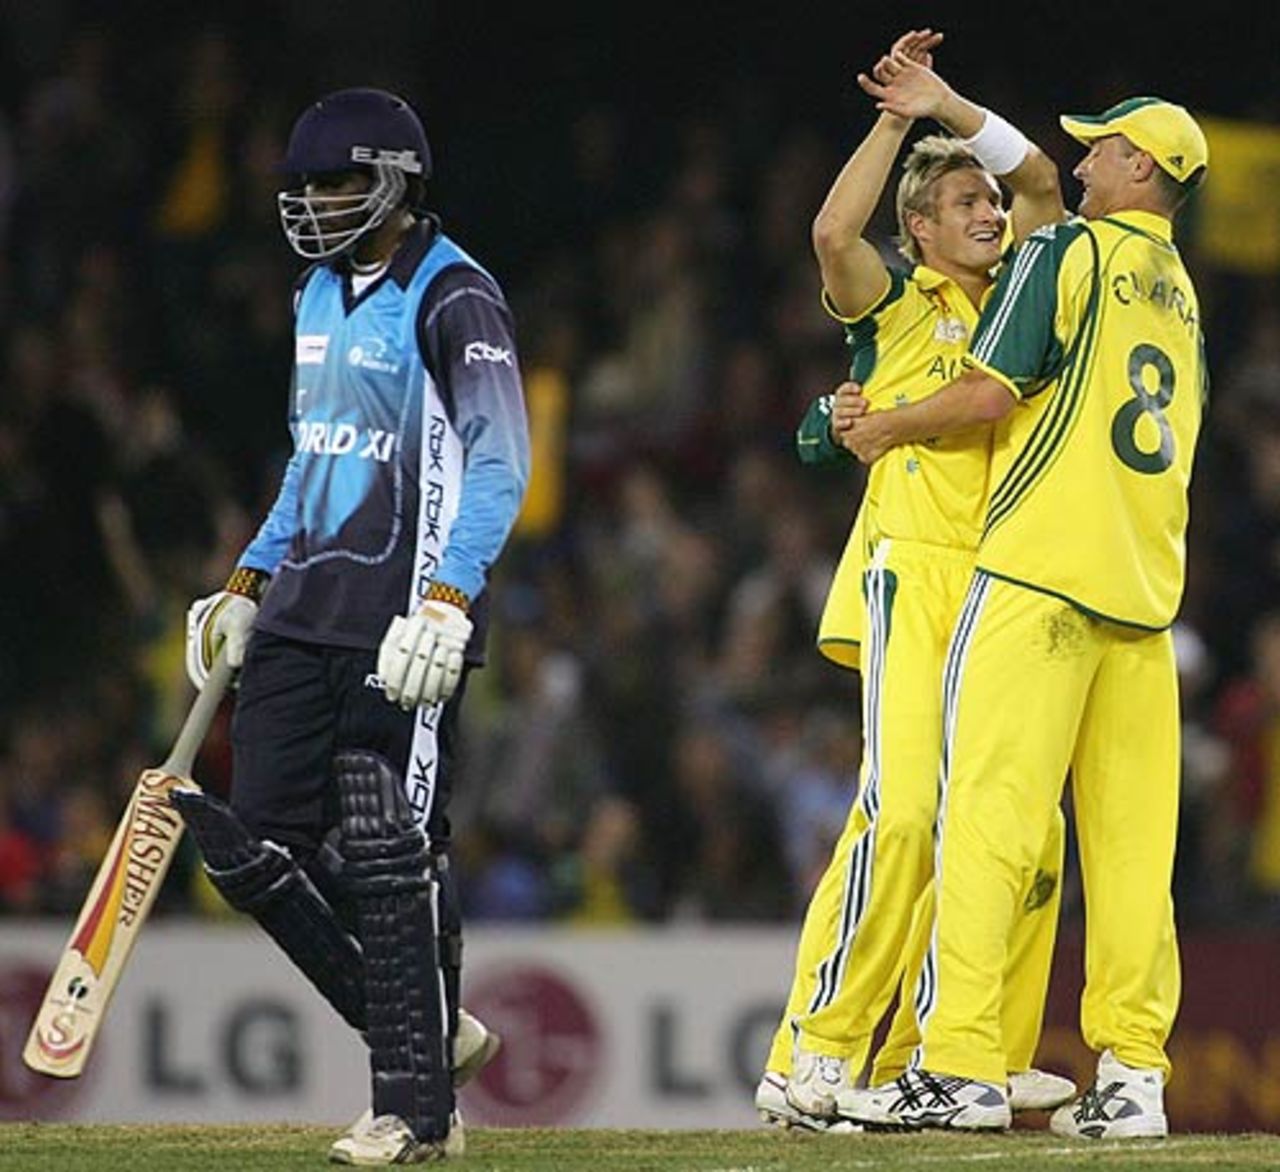 Shane Watson celebrates after dismissing Chris Gayle, Australia v World XI, 2nd ODI, Super Series, Melbourne, October 7, 2005